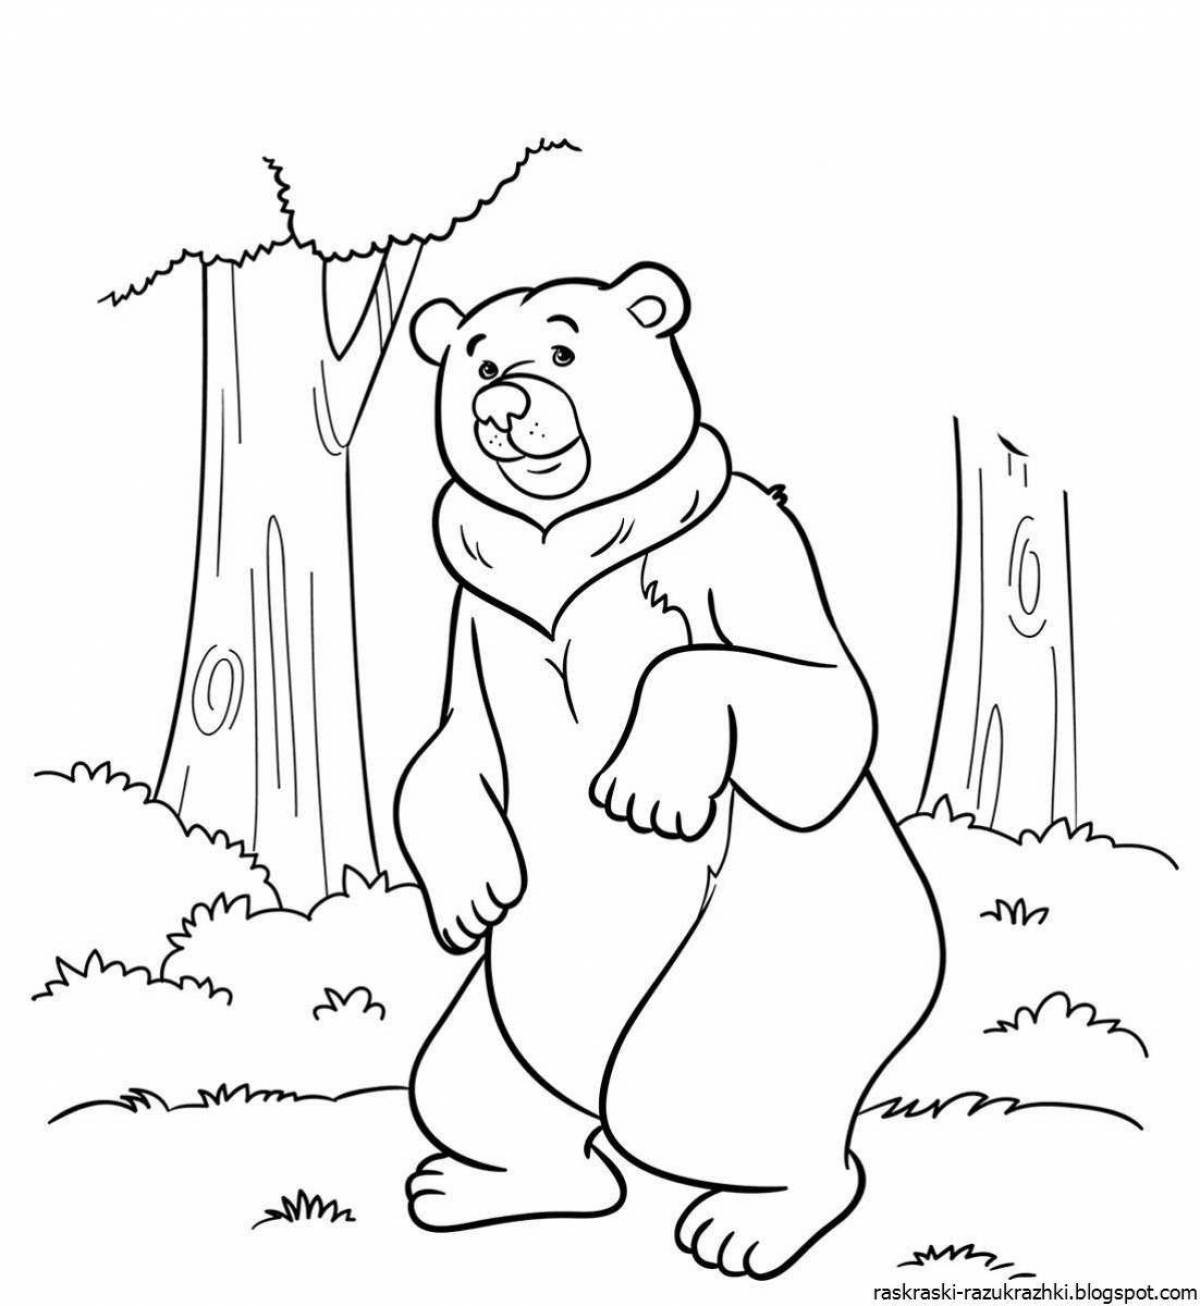 Playful bear coloring